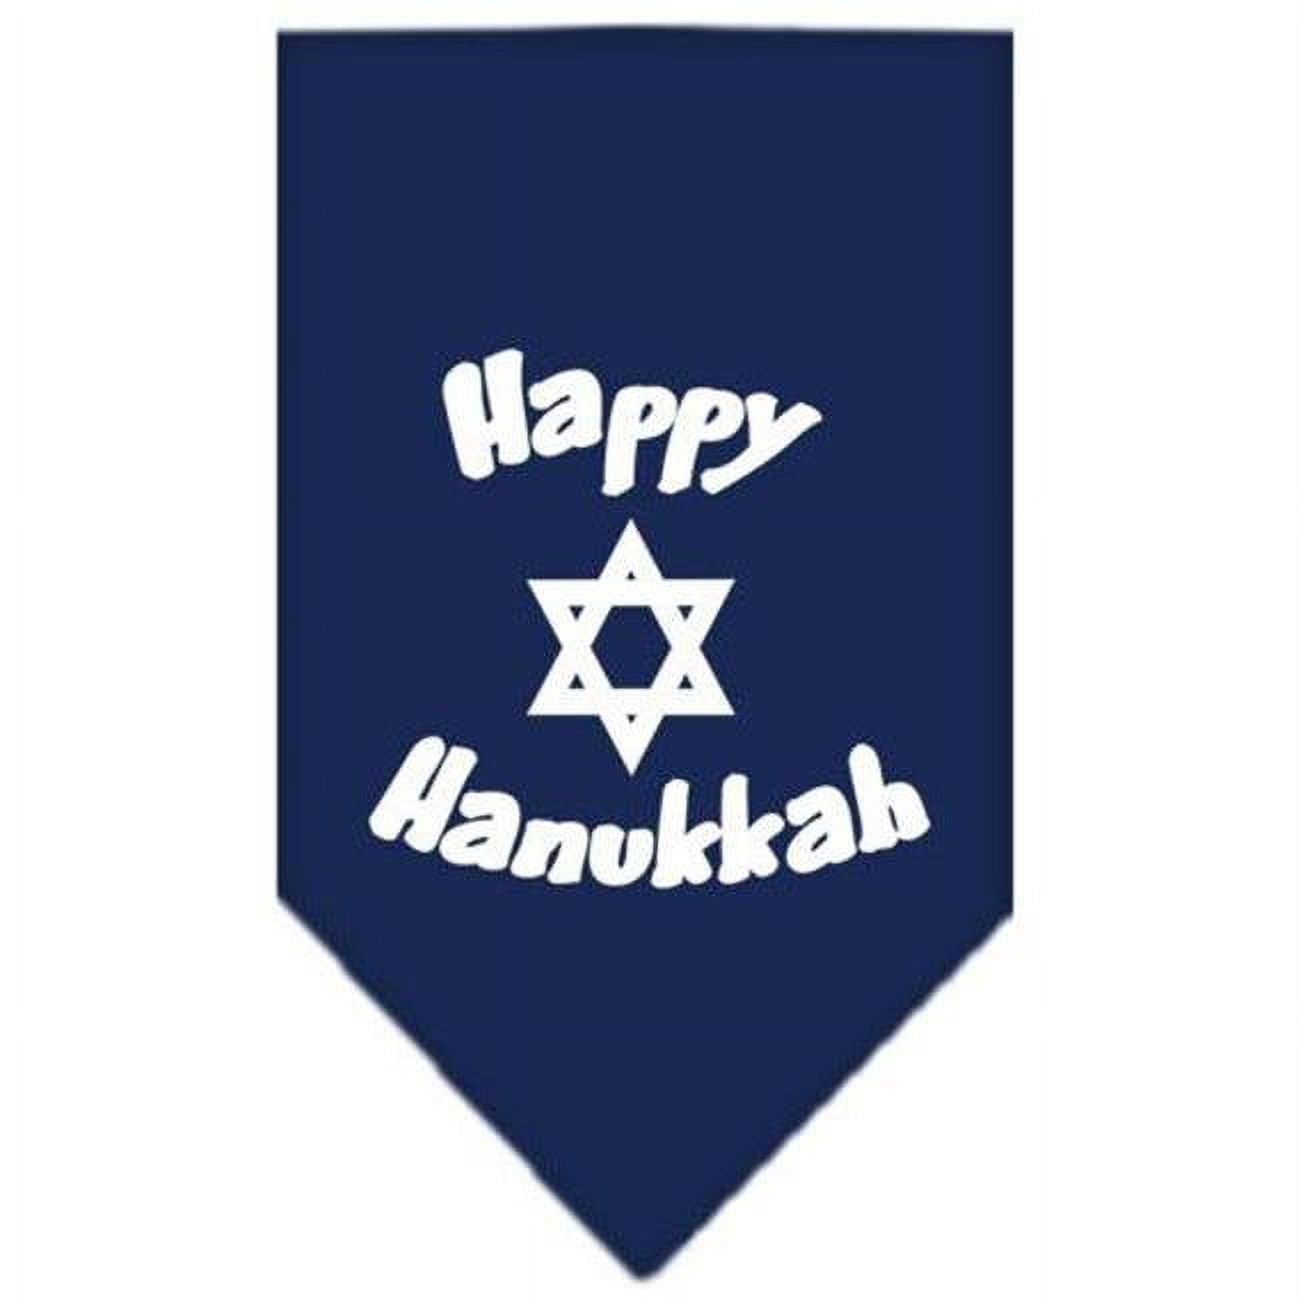 Happy Hanukkah Screen Print Bandana Navy Blue Small - image 1 of 10